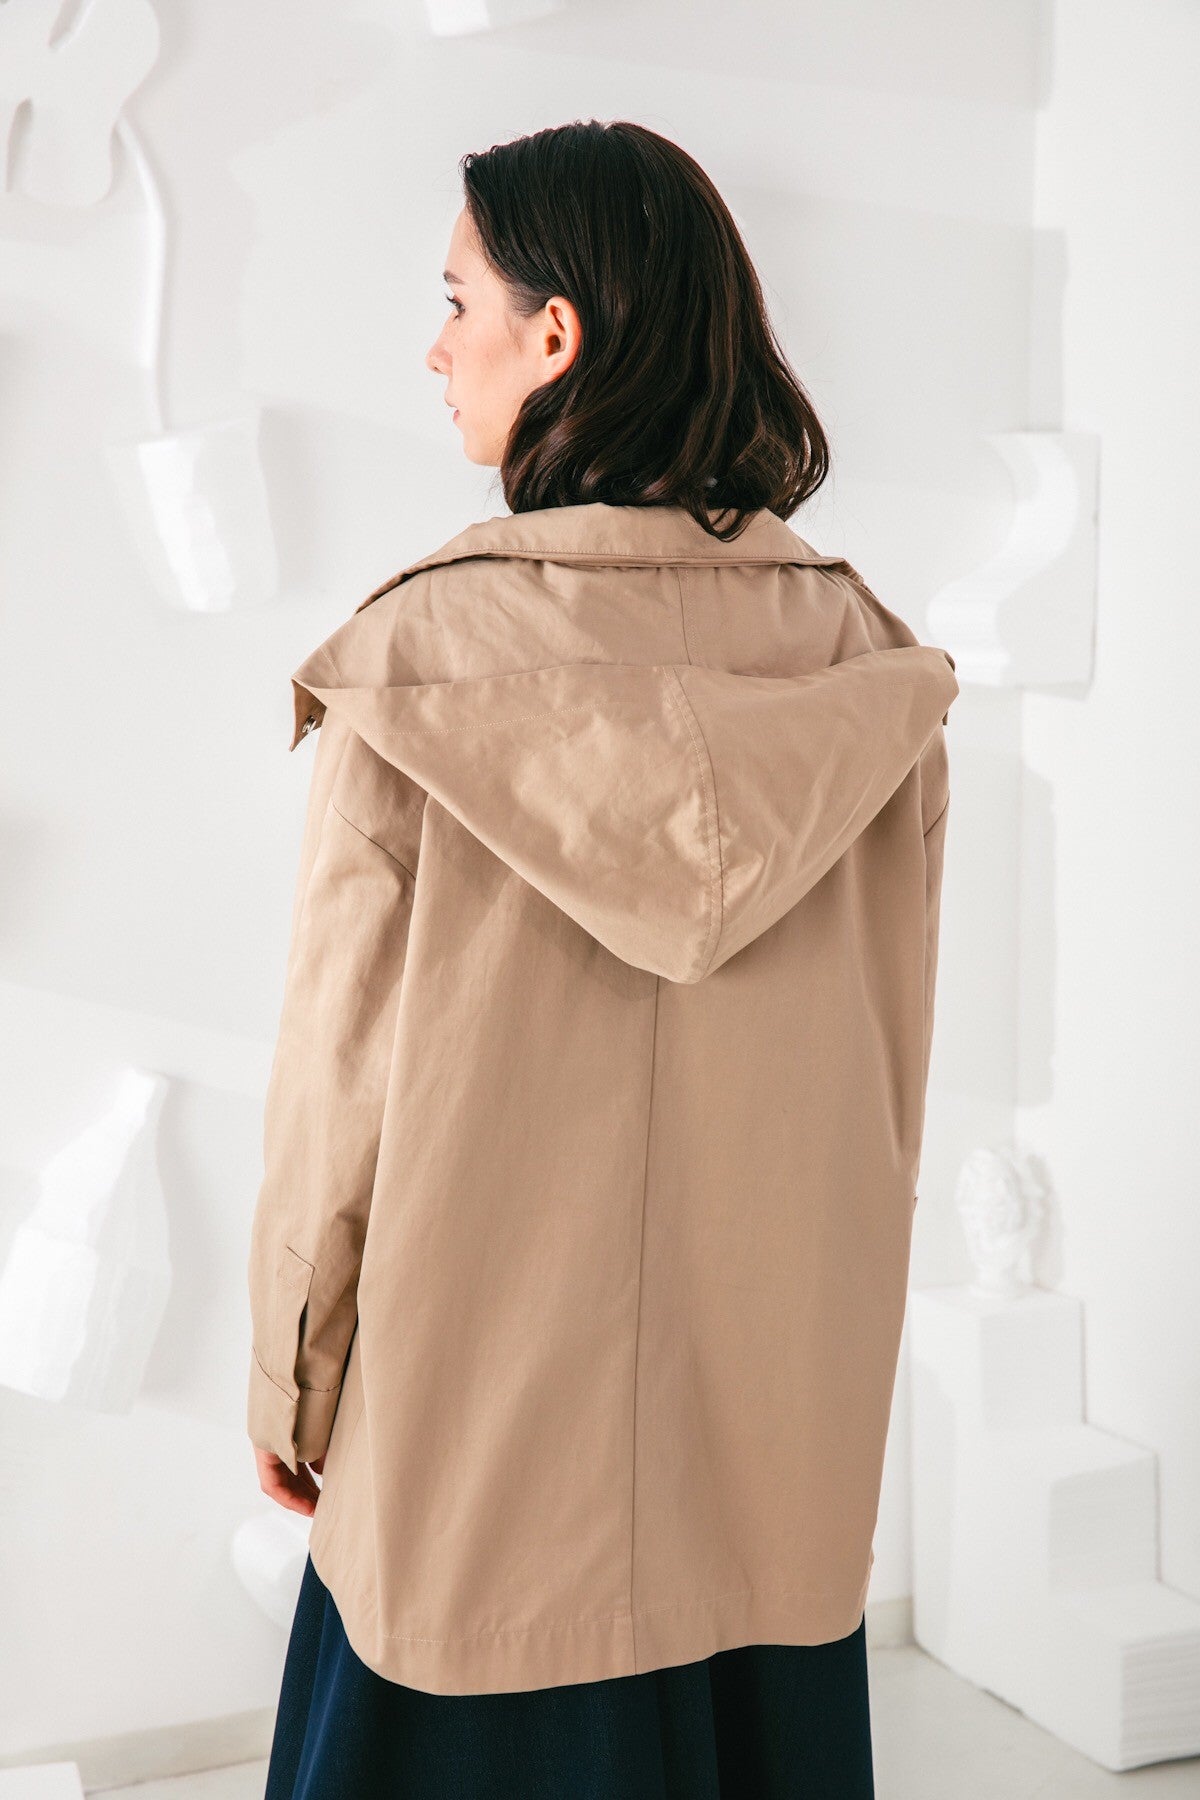 SKYE San Francisco SF shop ethical modern minimalist quality women clothing fashion Gabrielle Coat beige 5